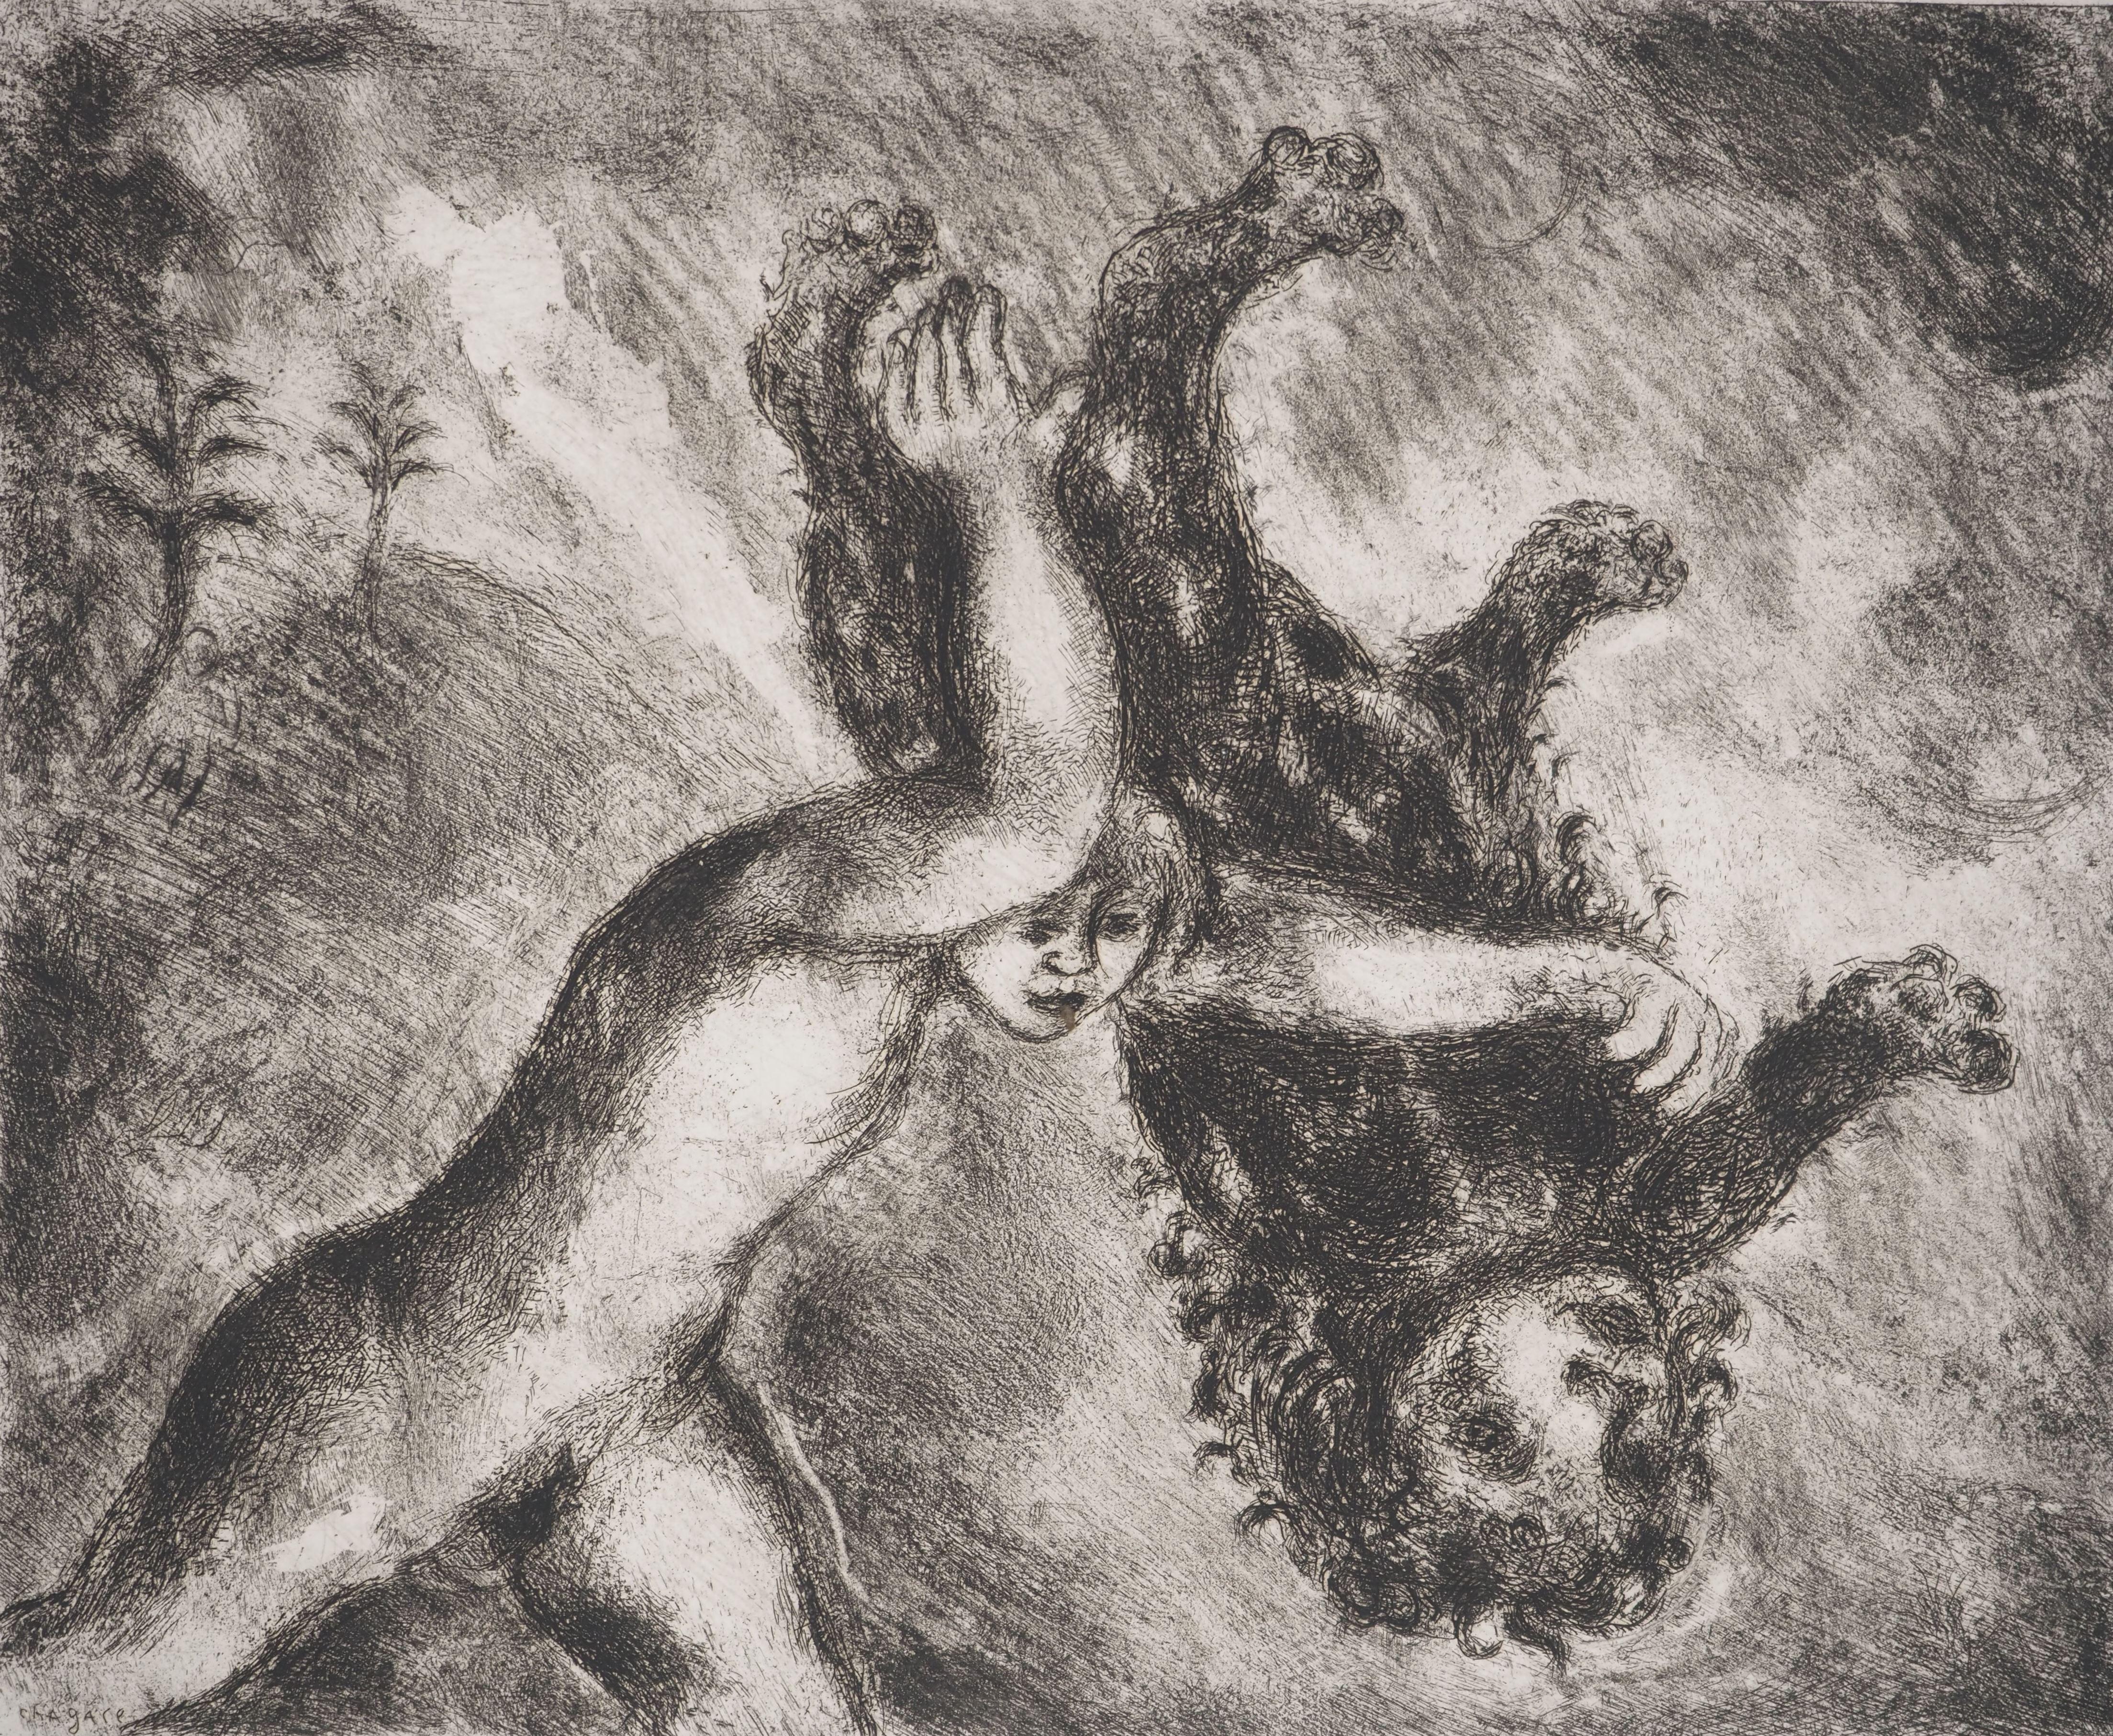 Marc Chagall (1887-1958)
Bibel : Samson und der Löwe, (Samson et le lion), 1939

Original-Radierung
Gedruckte Unterschrift auf der Platte
Auf Montval Vellum, 33,5 x 44 cm (ca. 13,1 x 17,3 Zoll)

INFORMATION: Veröffentlicht von Vollard / Tériade im